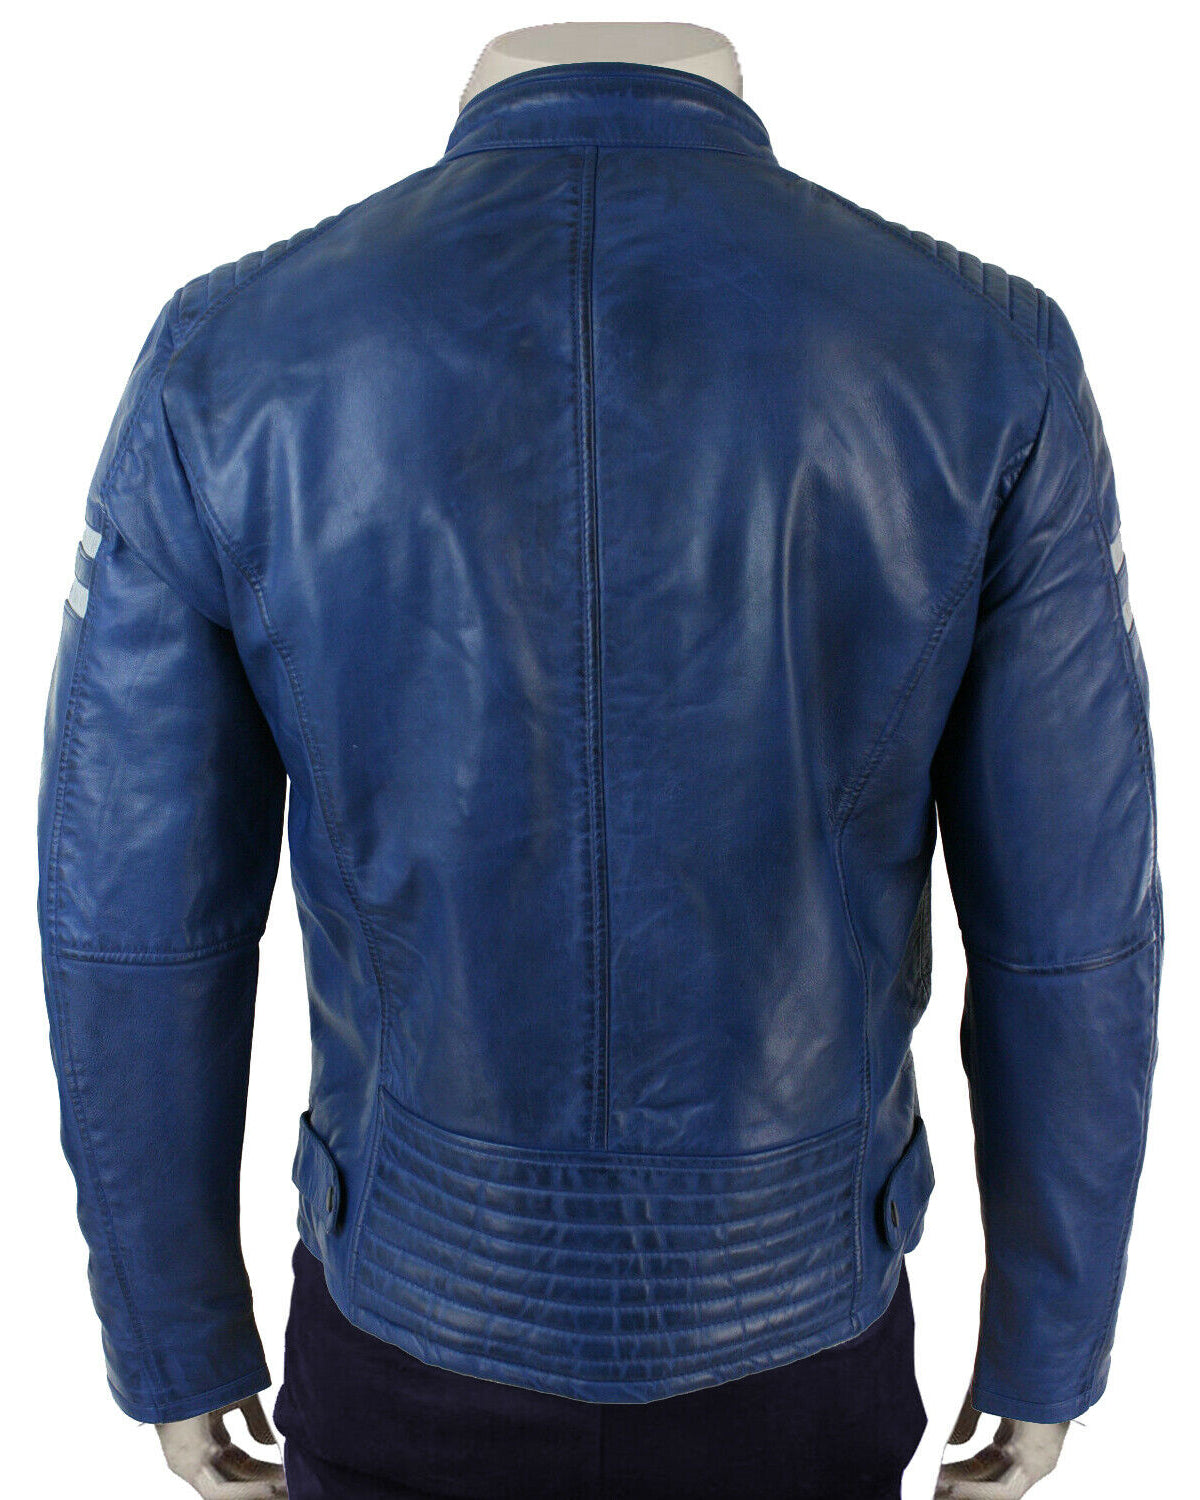 Elite Mens Cafe Racer Blue biker jacket Leather Motorcycle Jackets